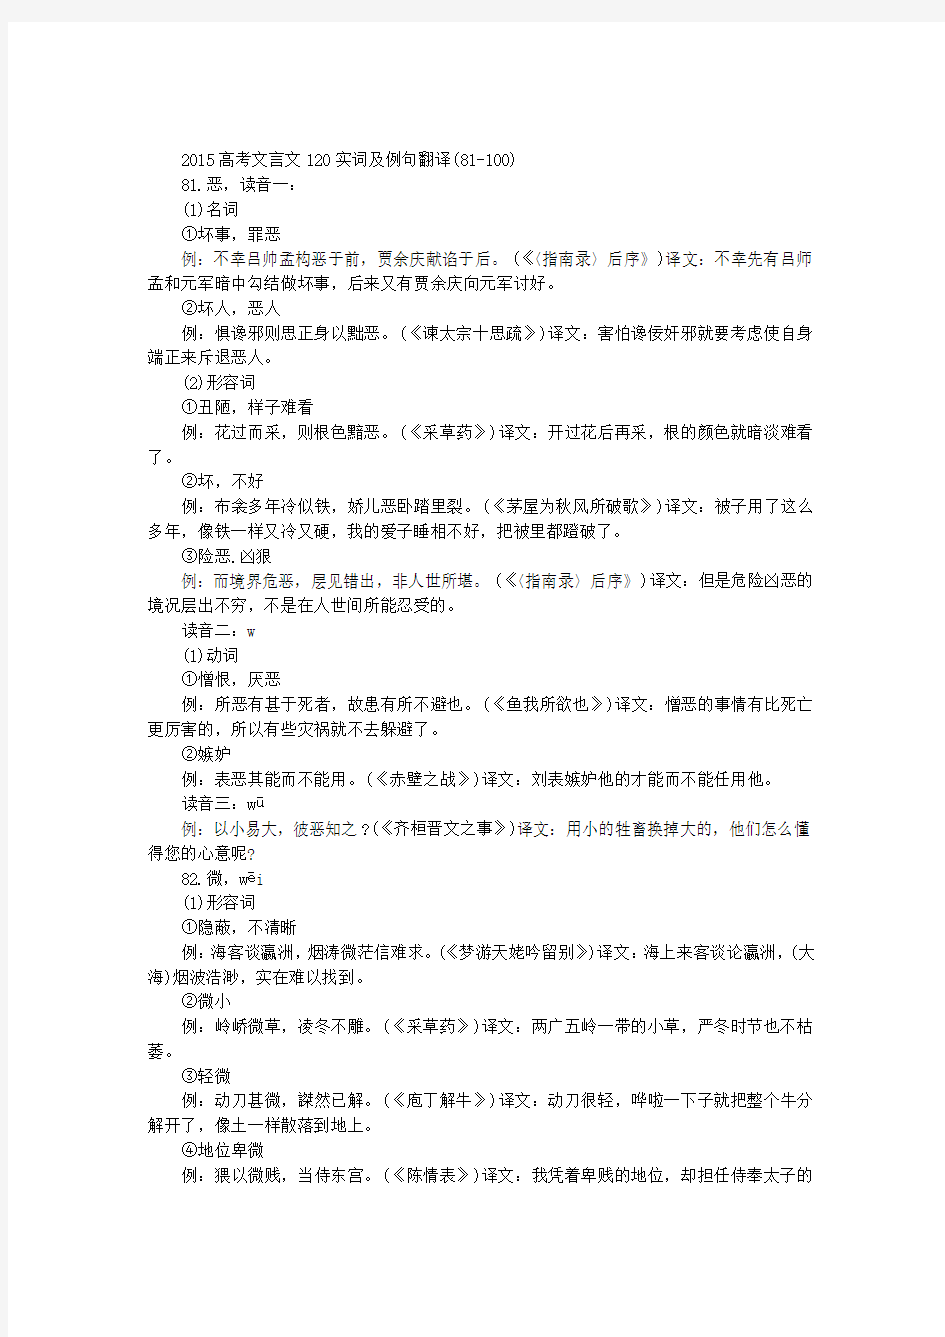 2015高考文言文120实词及例句翻译(81-100)